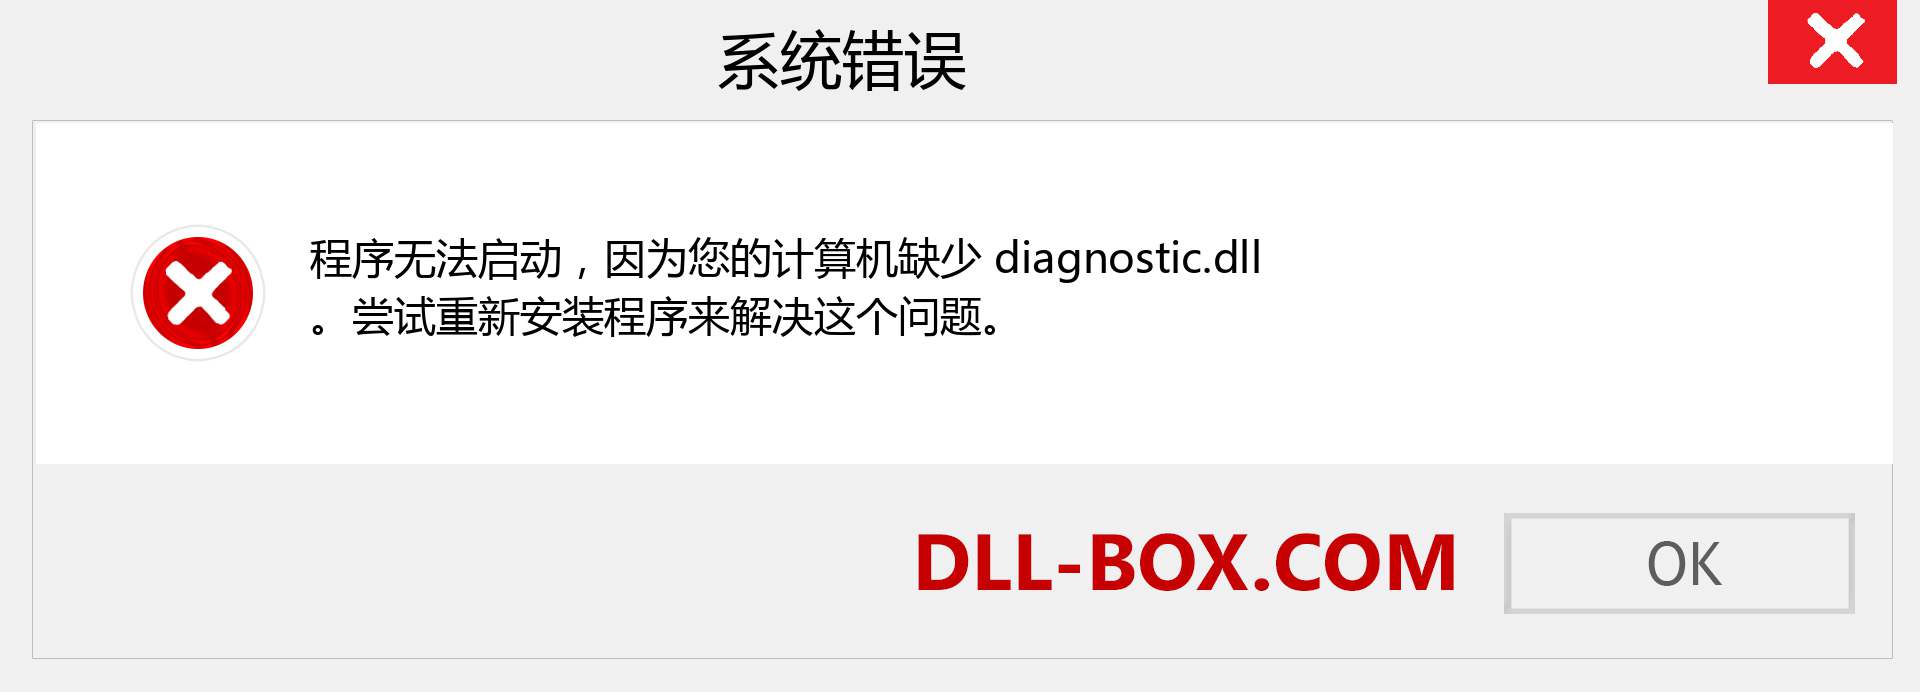 diagnostic.dll 文件丢失？。 适用于 Windows 7、8、10 的下载 - 修复 Windows、照片、图像上的 diagnostic dll 丢失错误